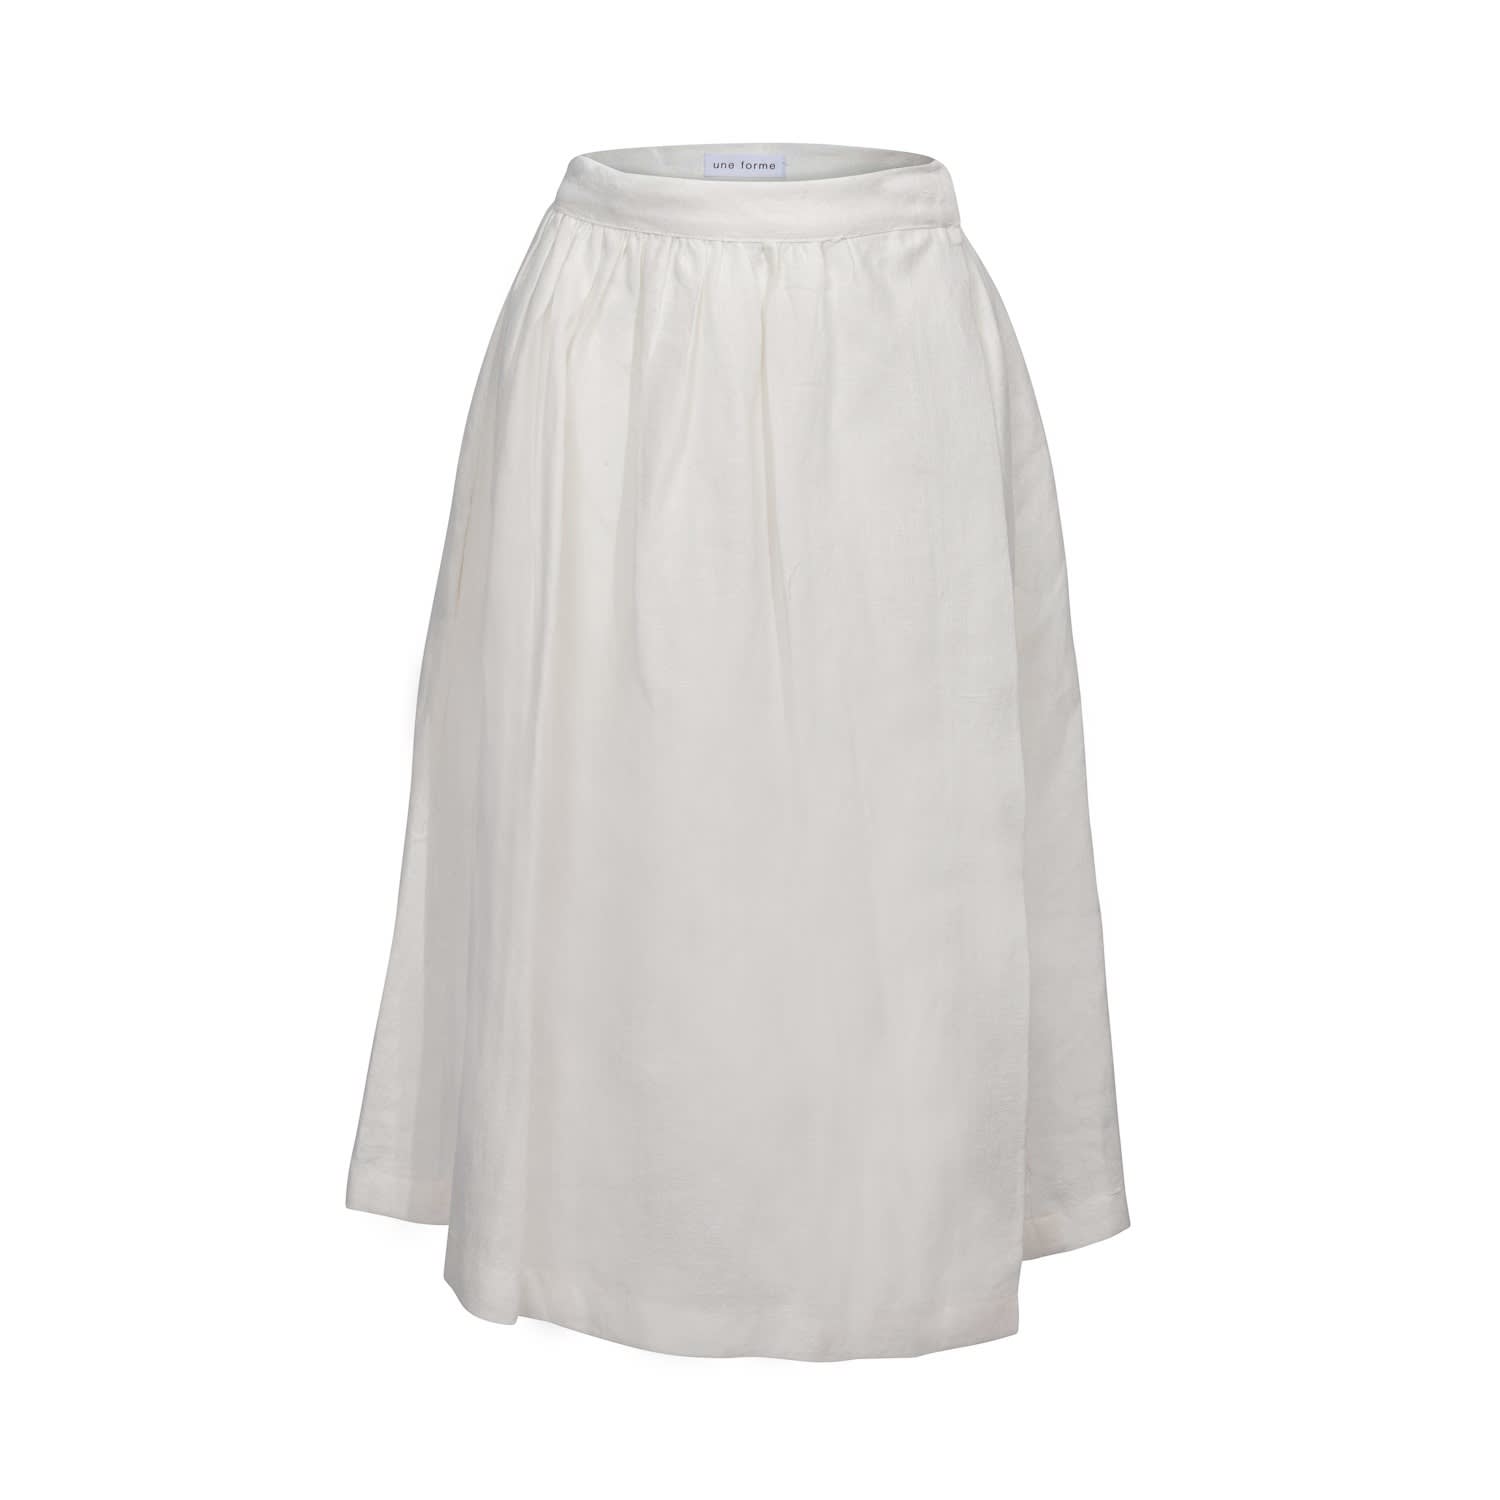 white chalk skirt